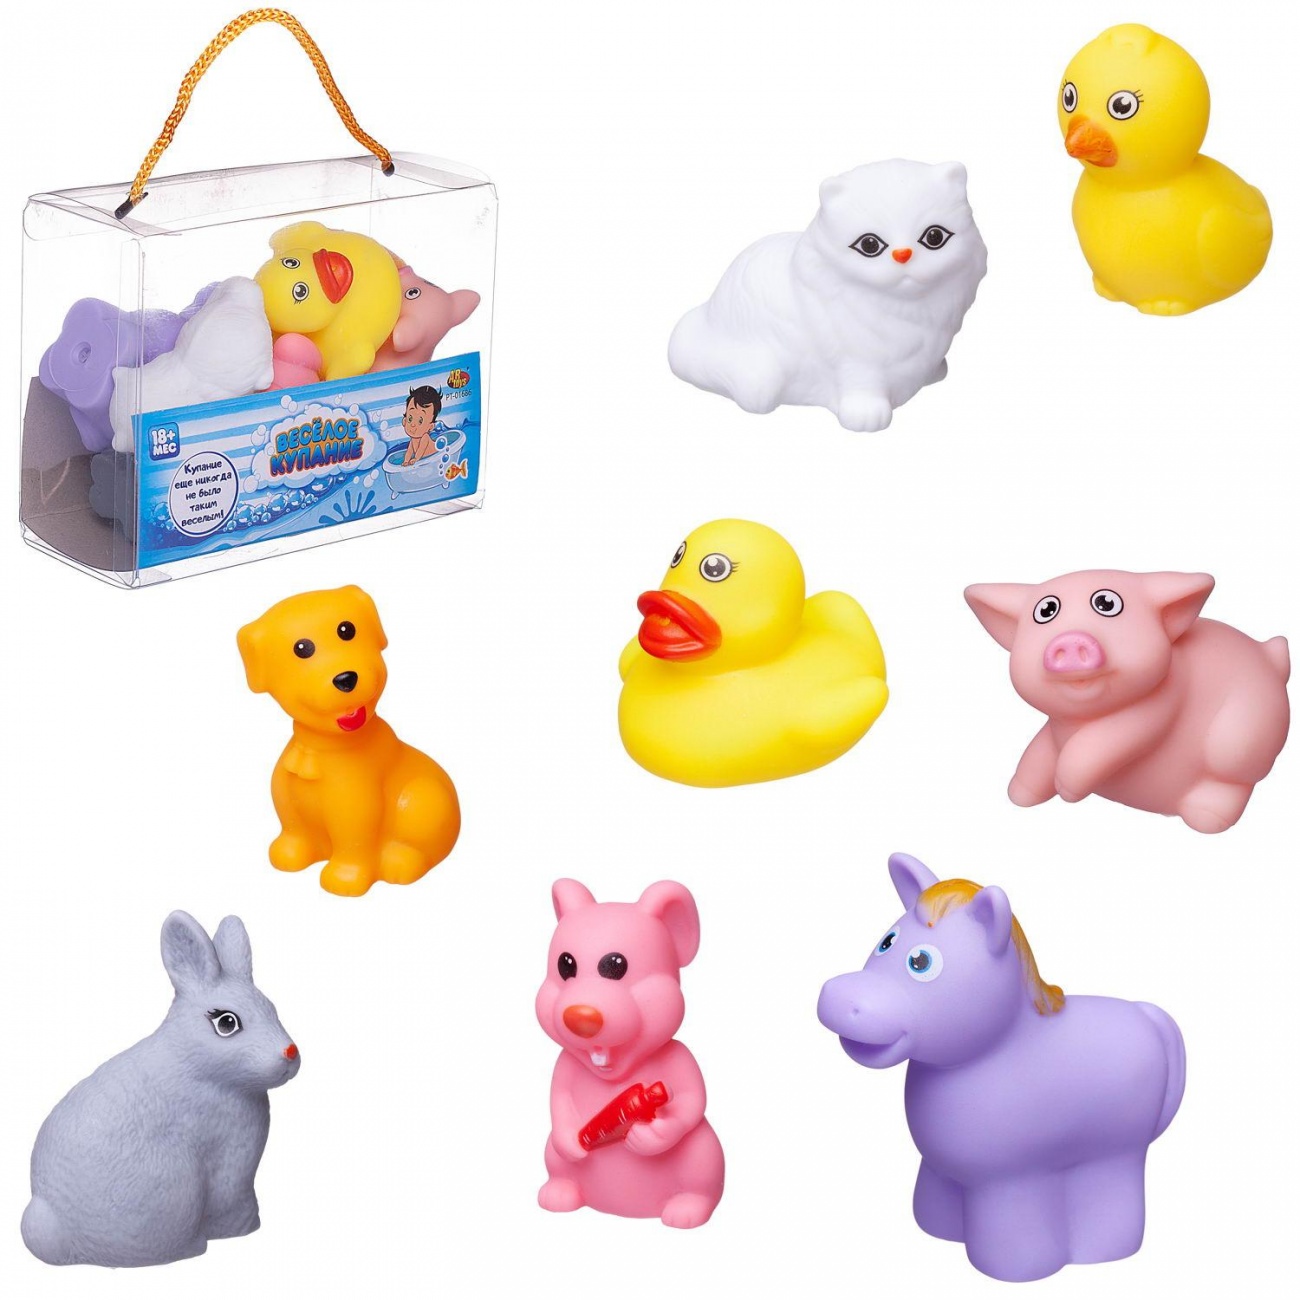 Набор резиновых игрушек для ванной Abtoys Веселое купание 8 предм. (набор 2) PT-01686